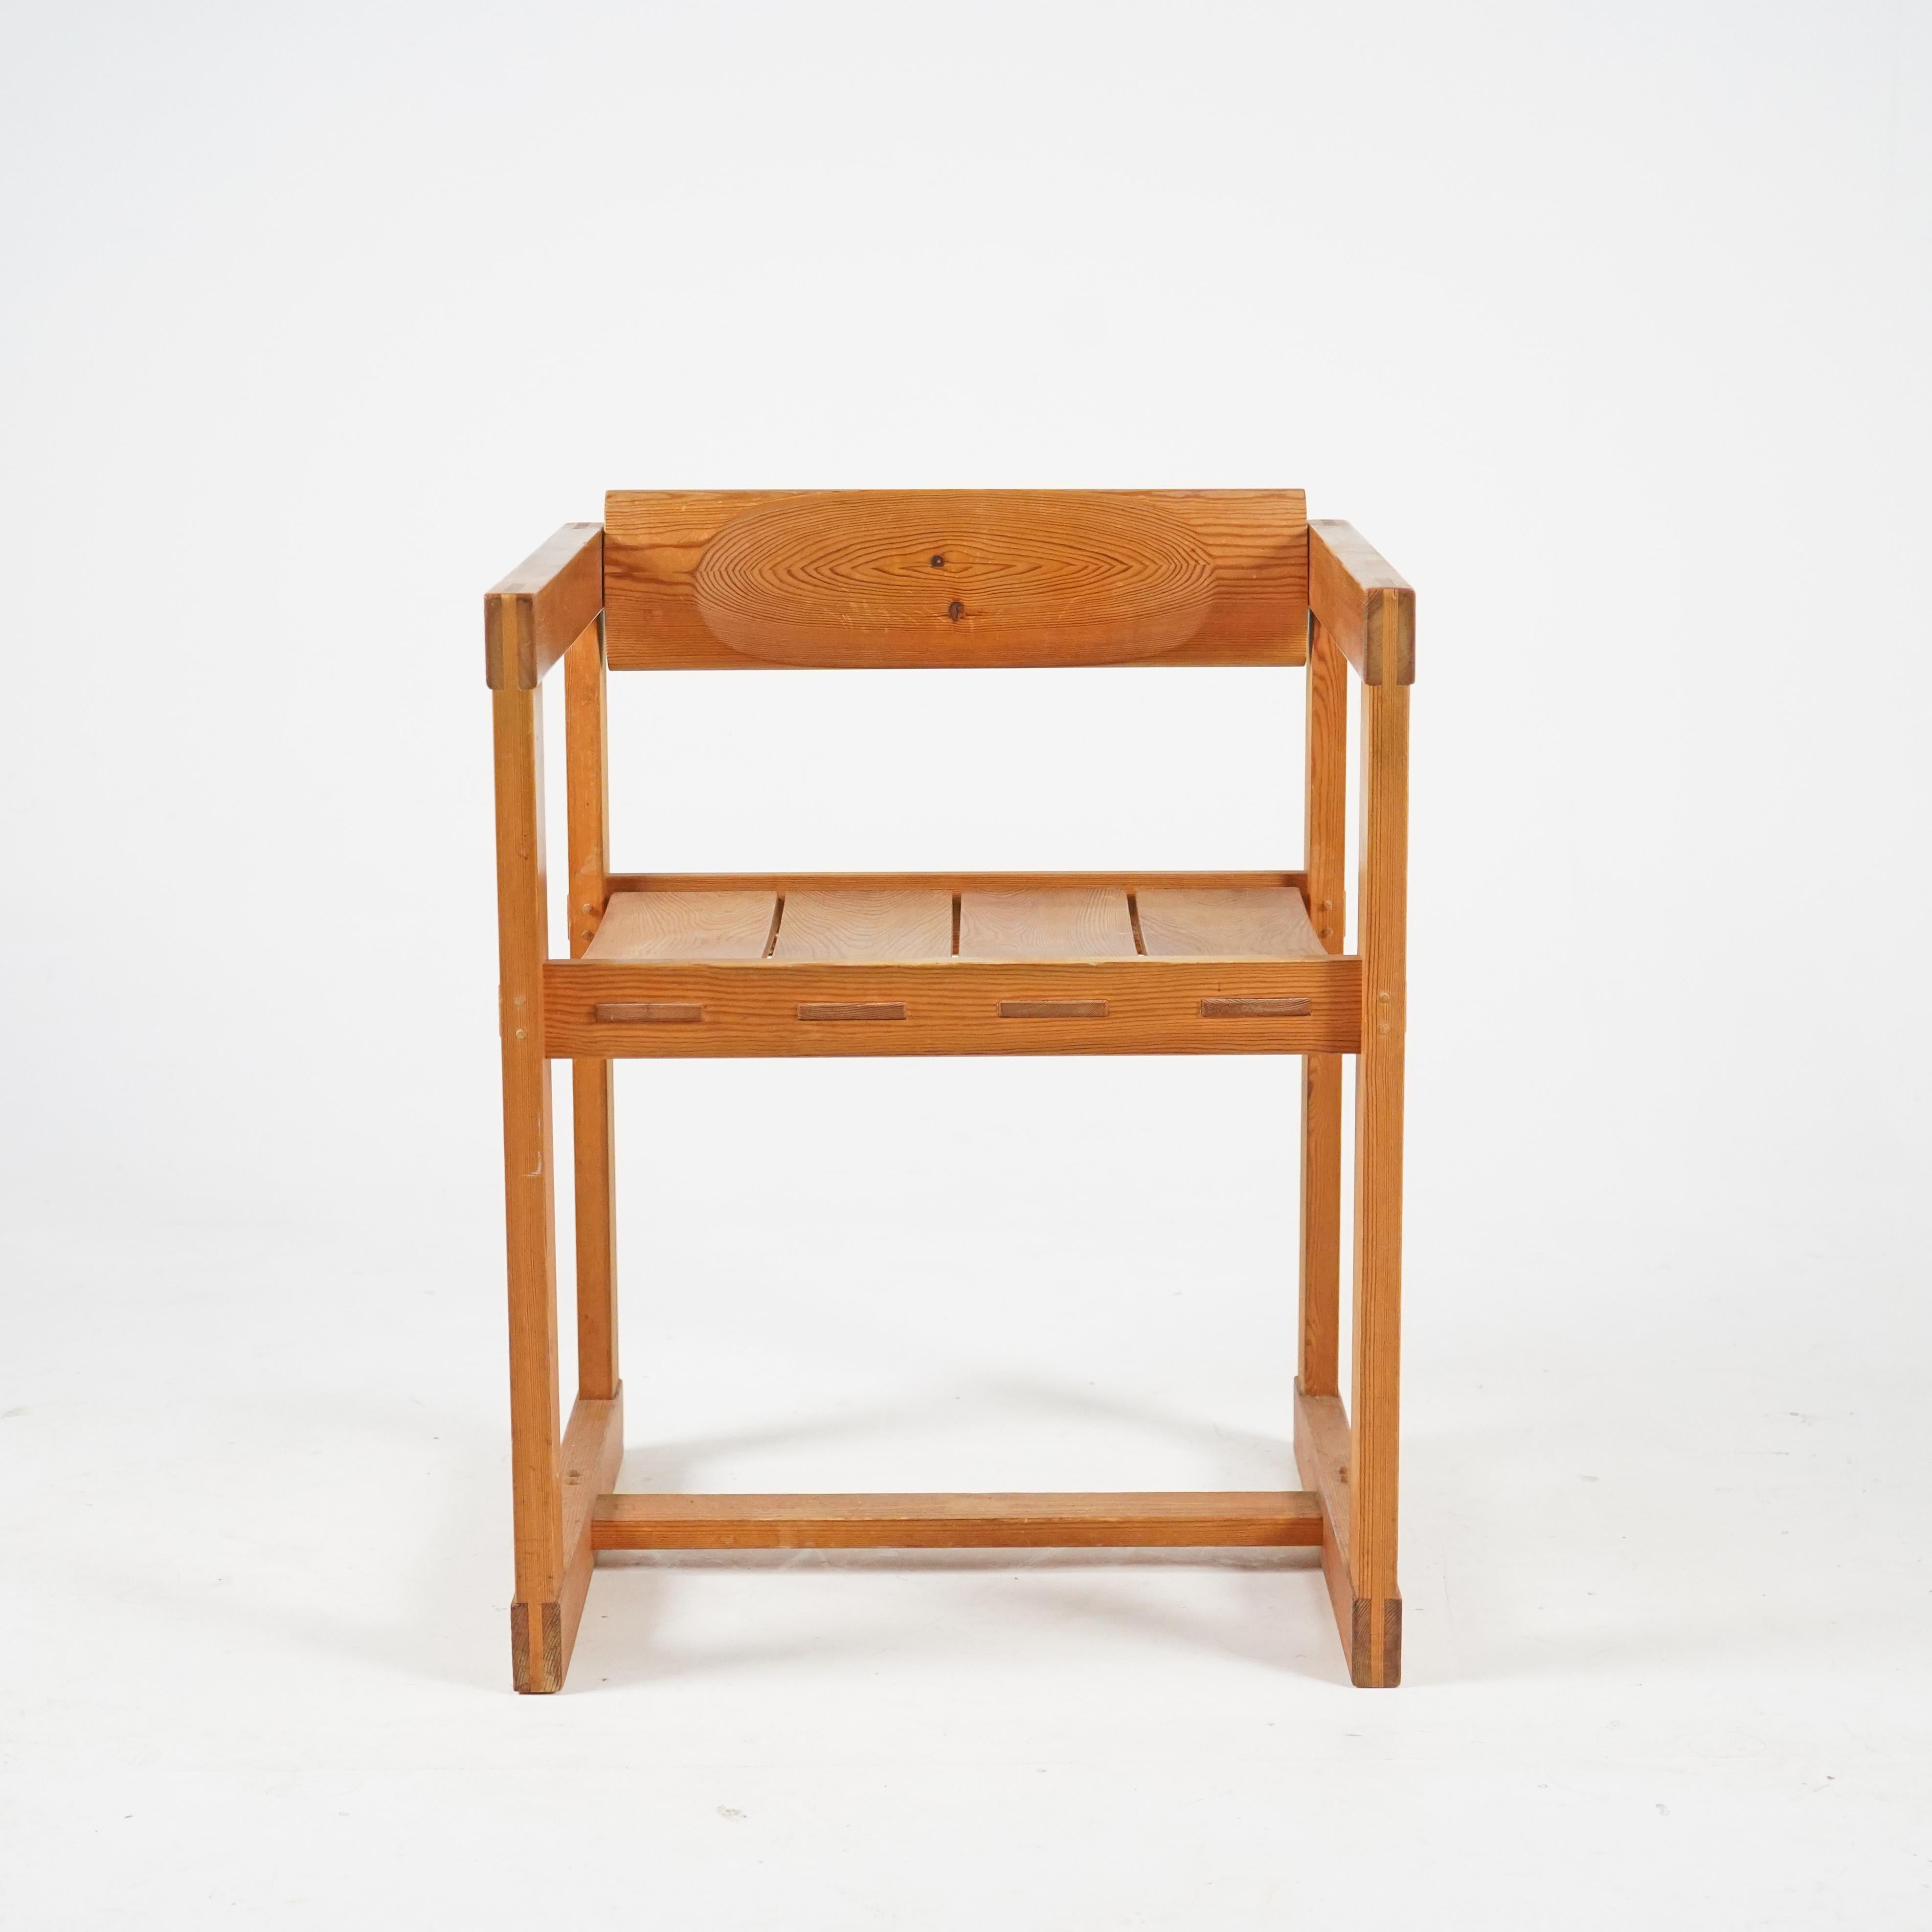 Découvrez le confort dans un style moderne avec la chaise 313 d'Edvin Helseth pour Trybo. Il est doté d'un cadre angulaire en bois de pin et d'un support lombaire réglable pour un confort maximum. Le complément idéal pour votre maison ! Condit est